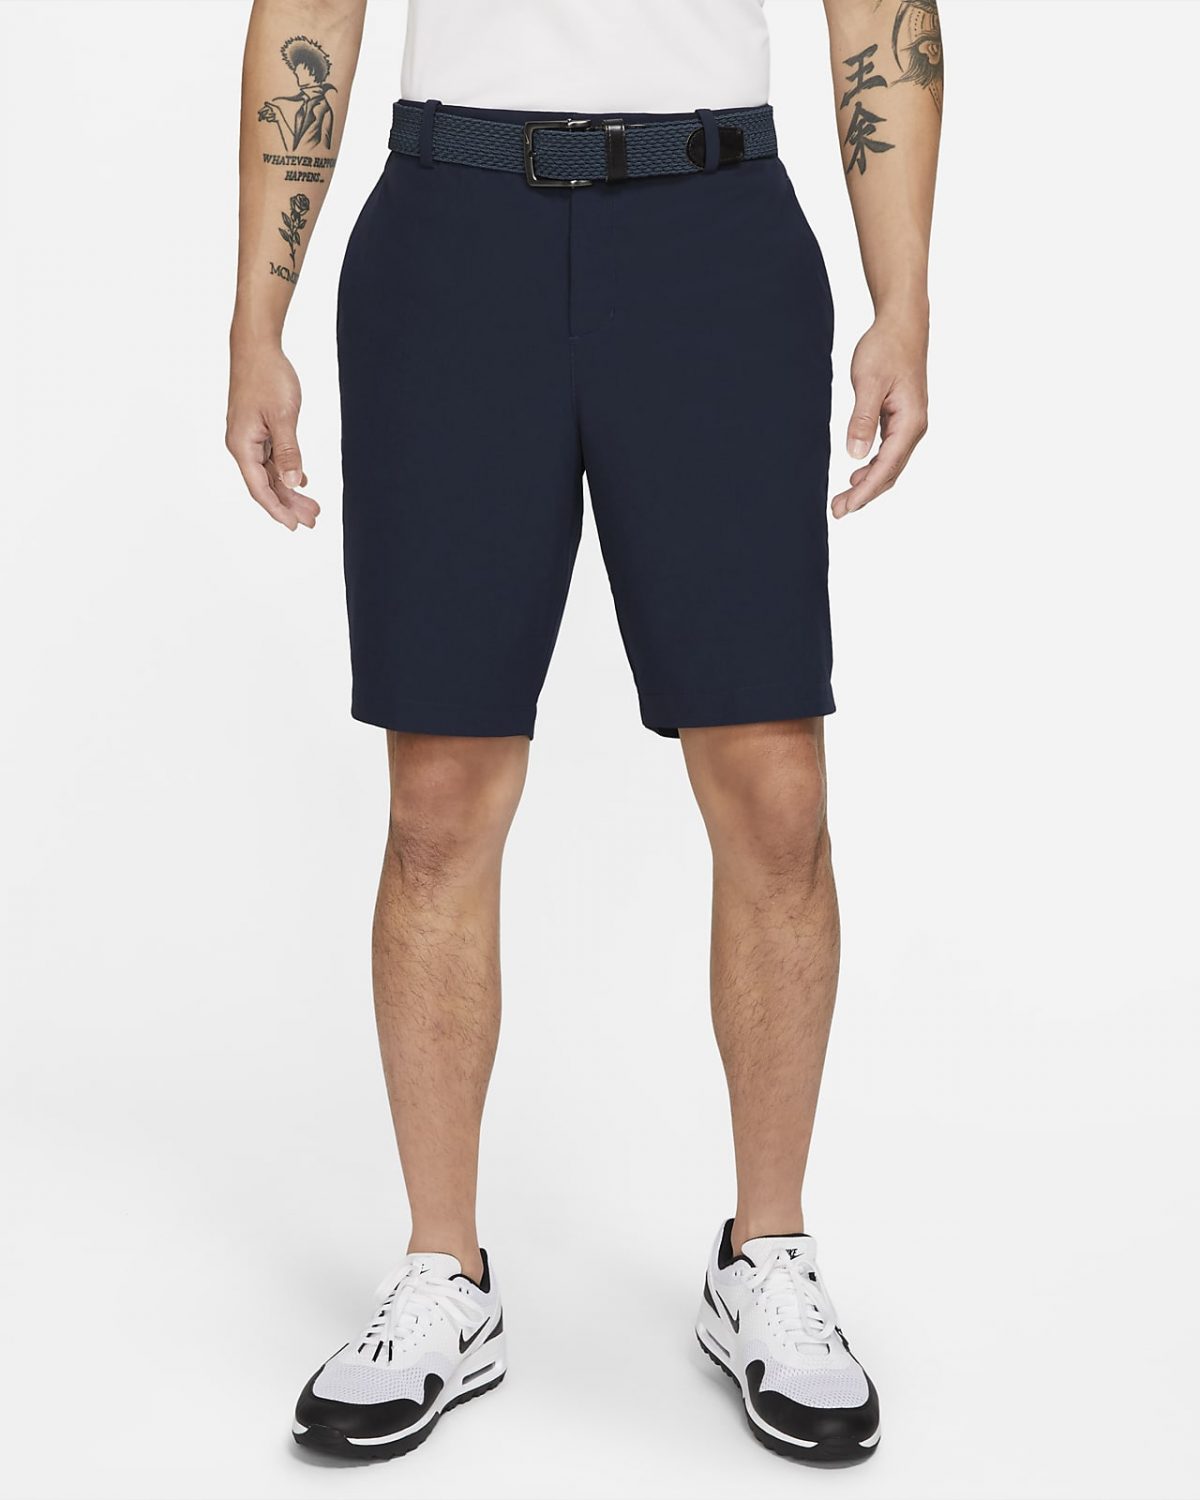 Мужские шорты Nike Dri-FIT фото